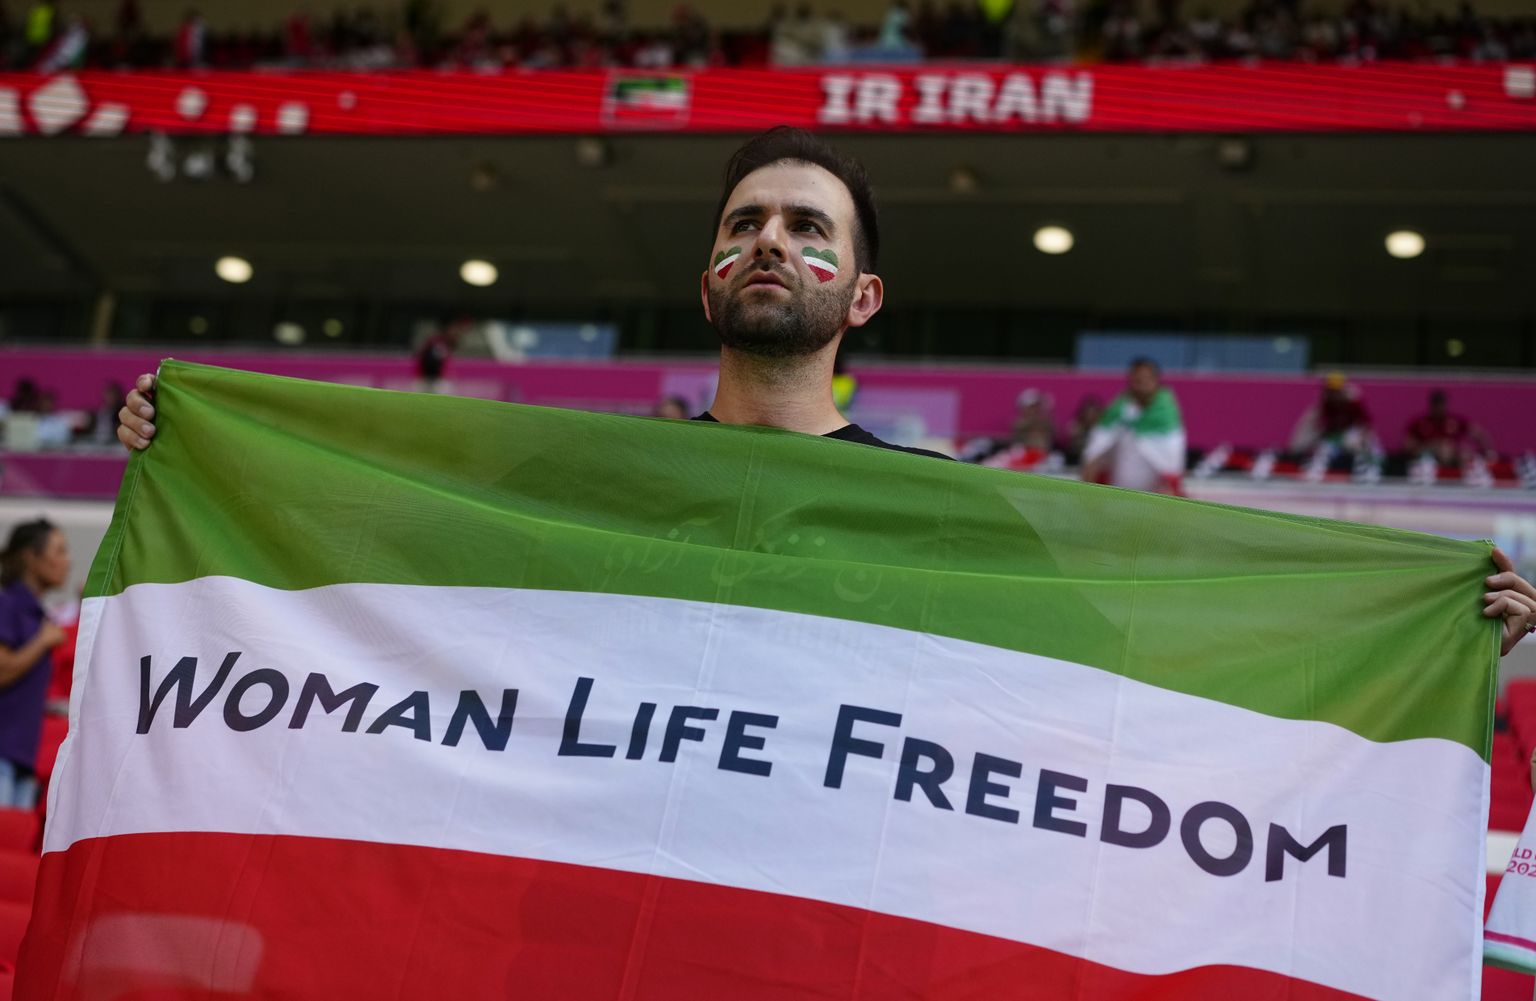 Futbola līdzjutējs tur rokās Irānas karogu un aicina iestāties par sieviešu tiesībām